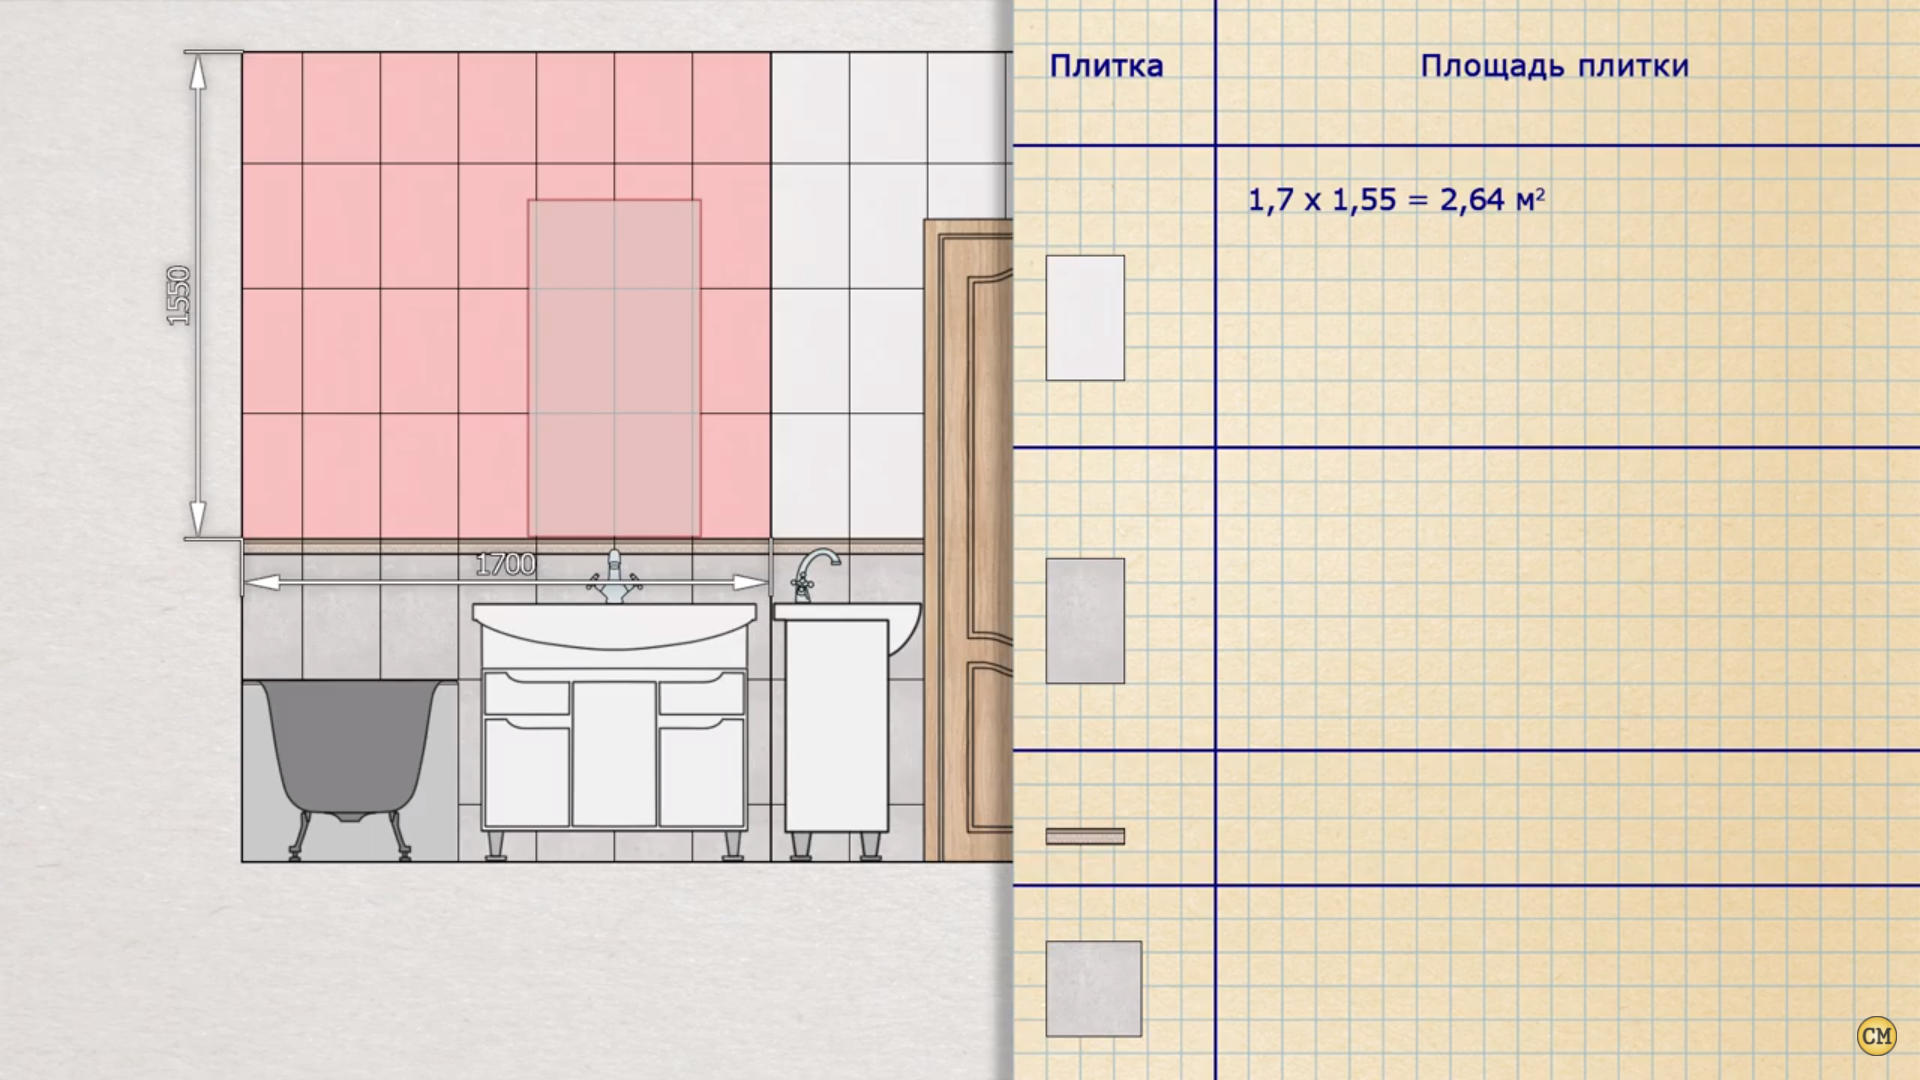 Расчет количества плитки для ванной комнаты, расход и стоимость